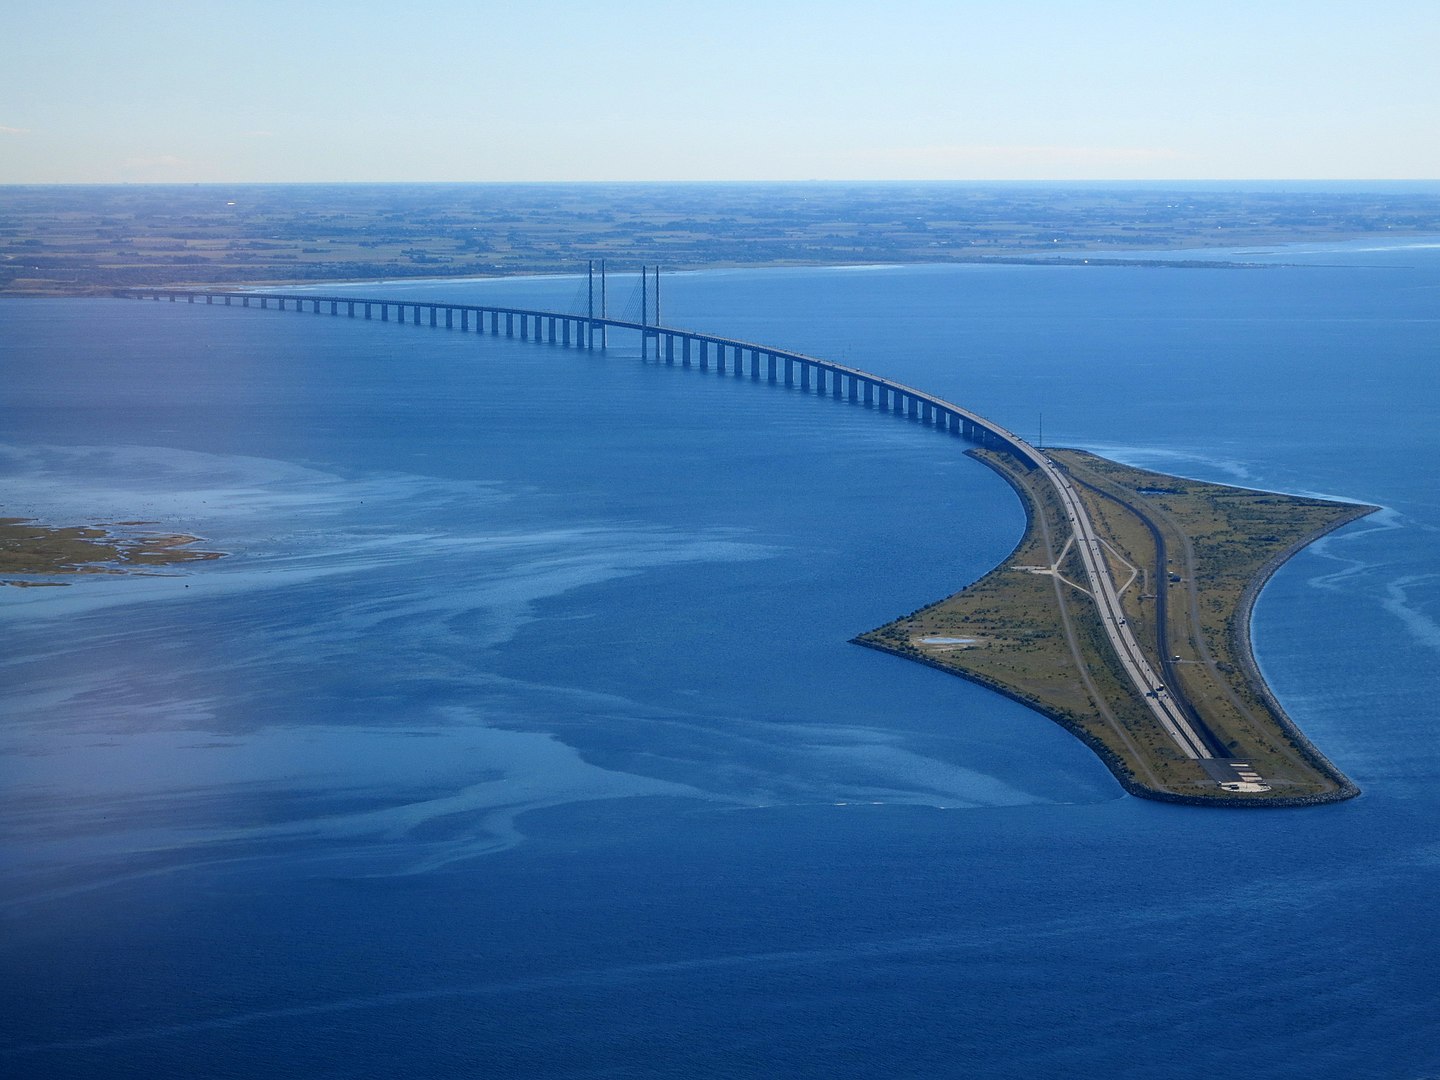 1440px-Øresund_Bridge_from_the_air_in_September_2015.jpg